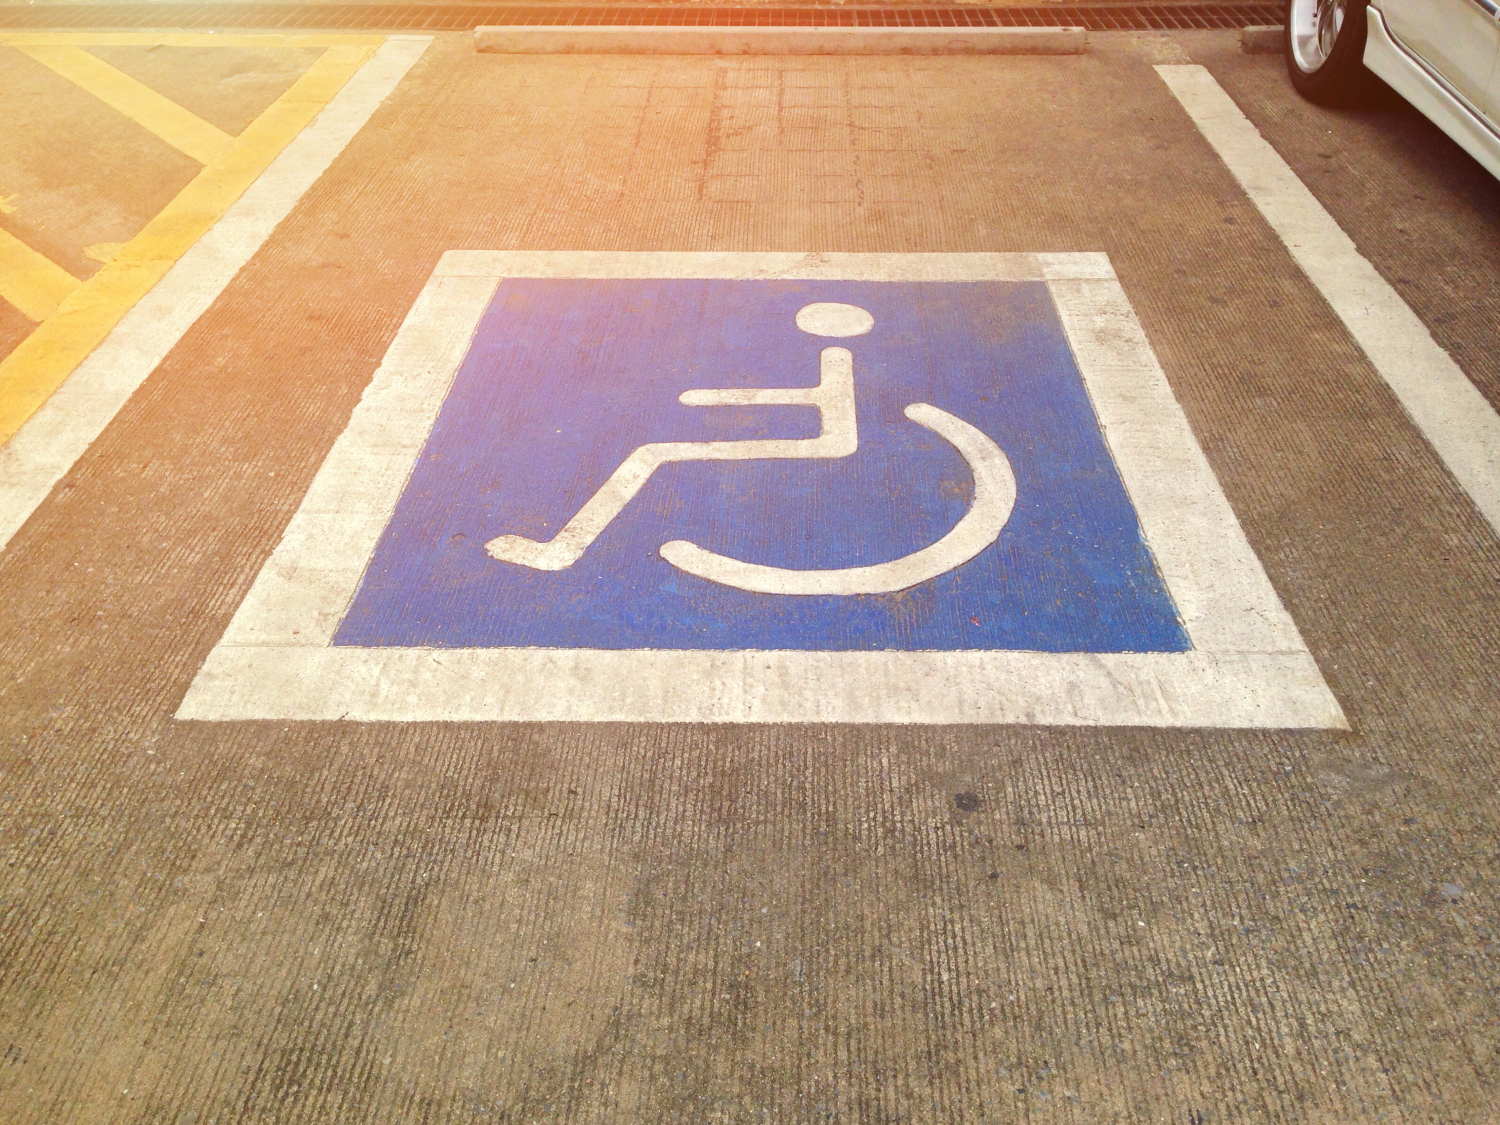 disabled-parking-spot-(1).jpg